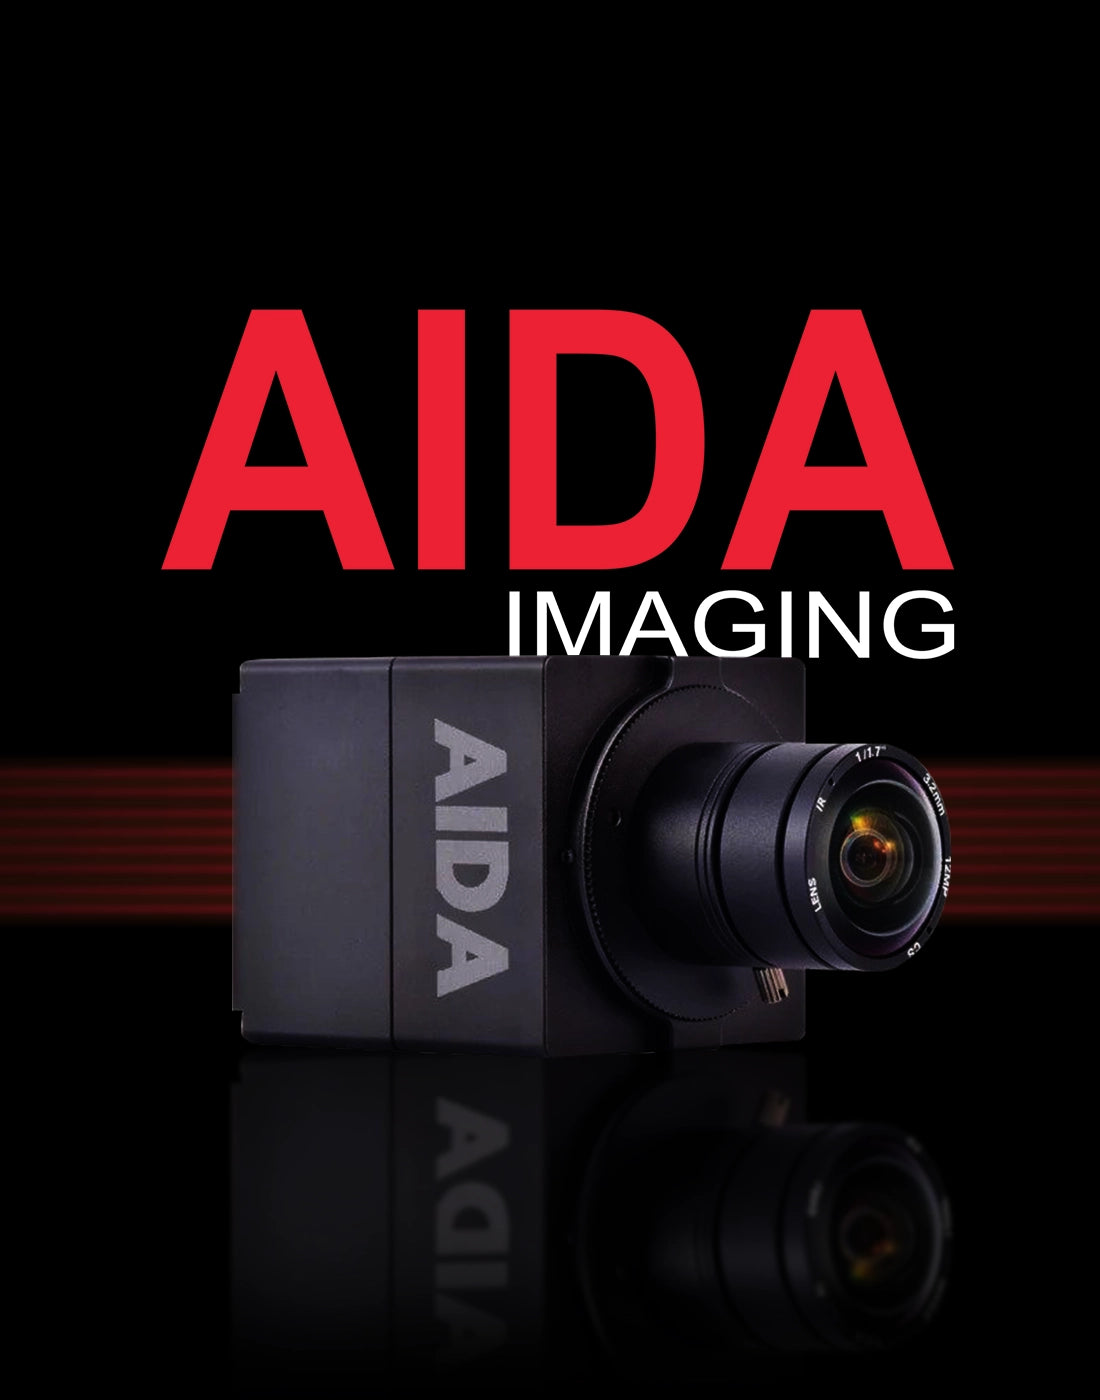 aida imaging